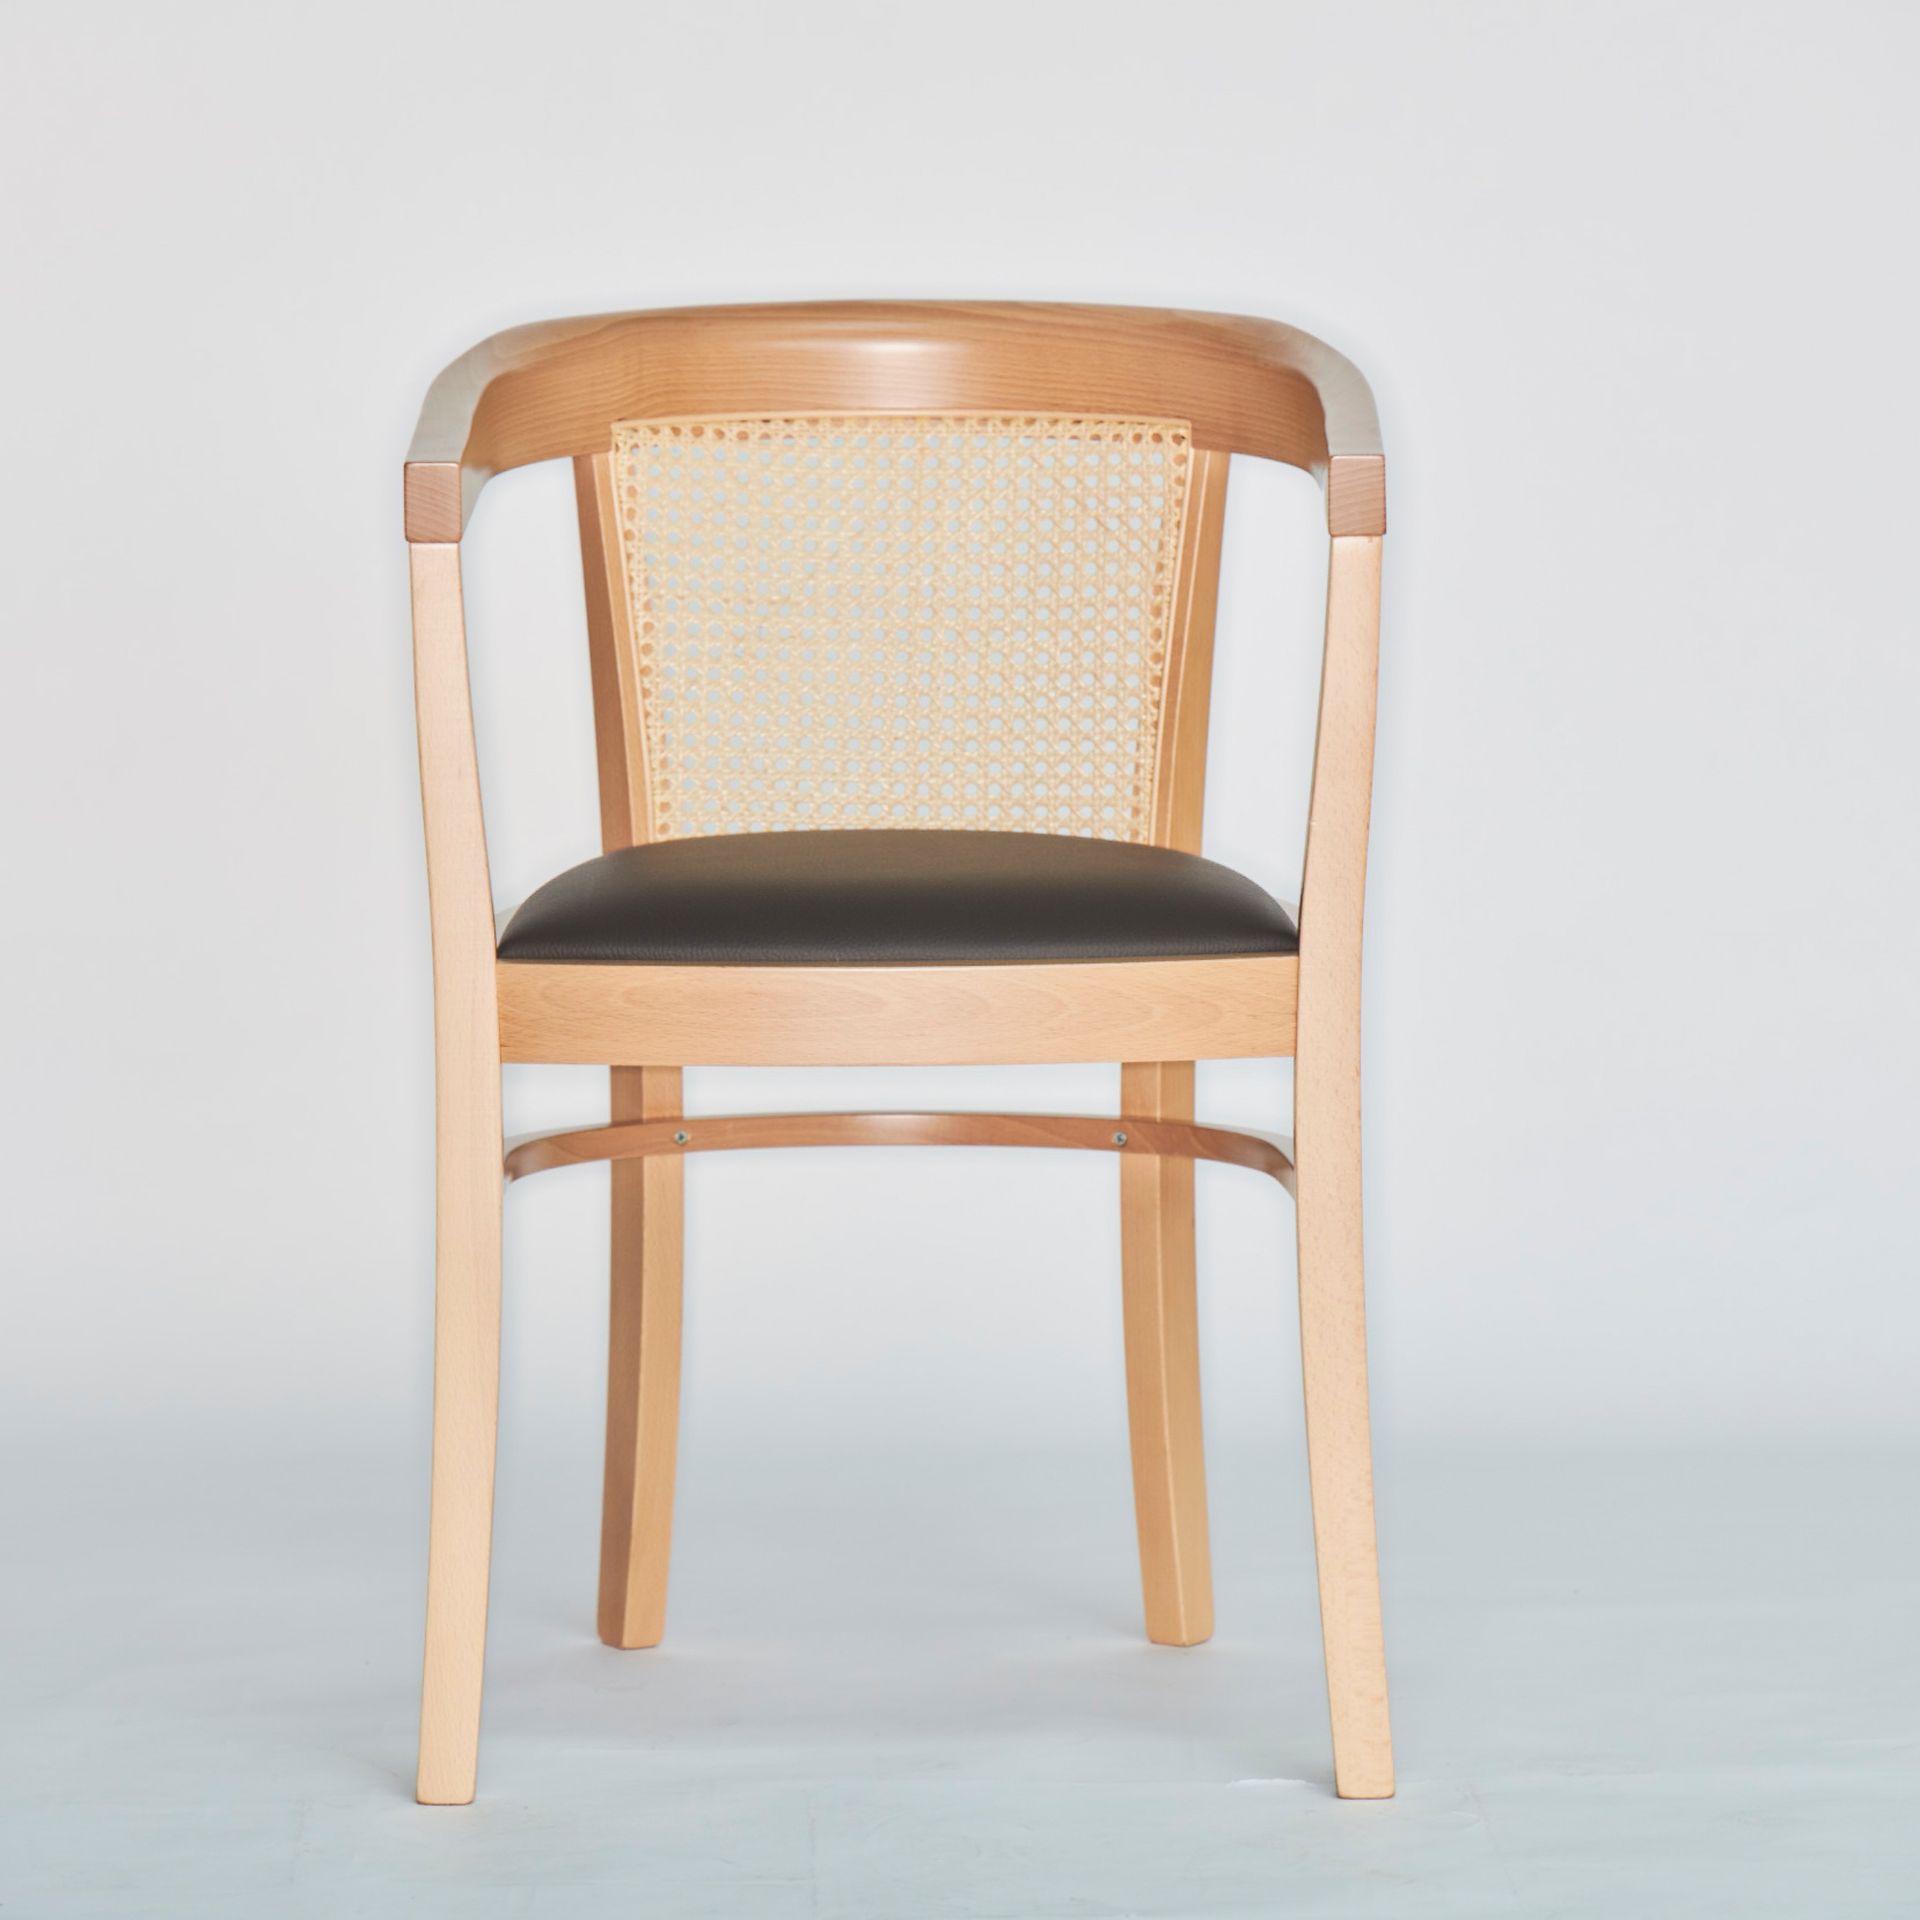 Der Stuhl Charles Cane besitzt ein schlichtes Design. Gefertigt wurde er aus Buchenholz und ist ein Produkt der Marke Jan Kurtz. Die Sitzfläche ist aus Leder.